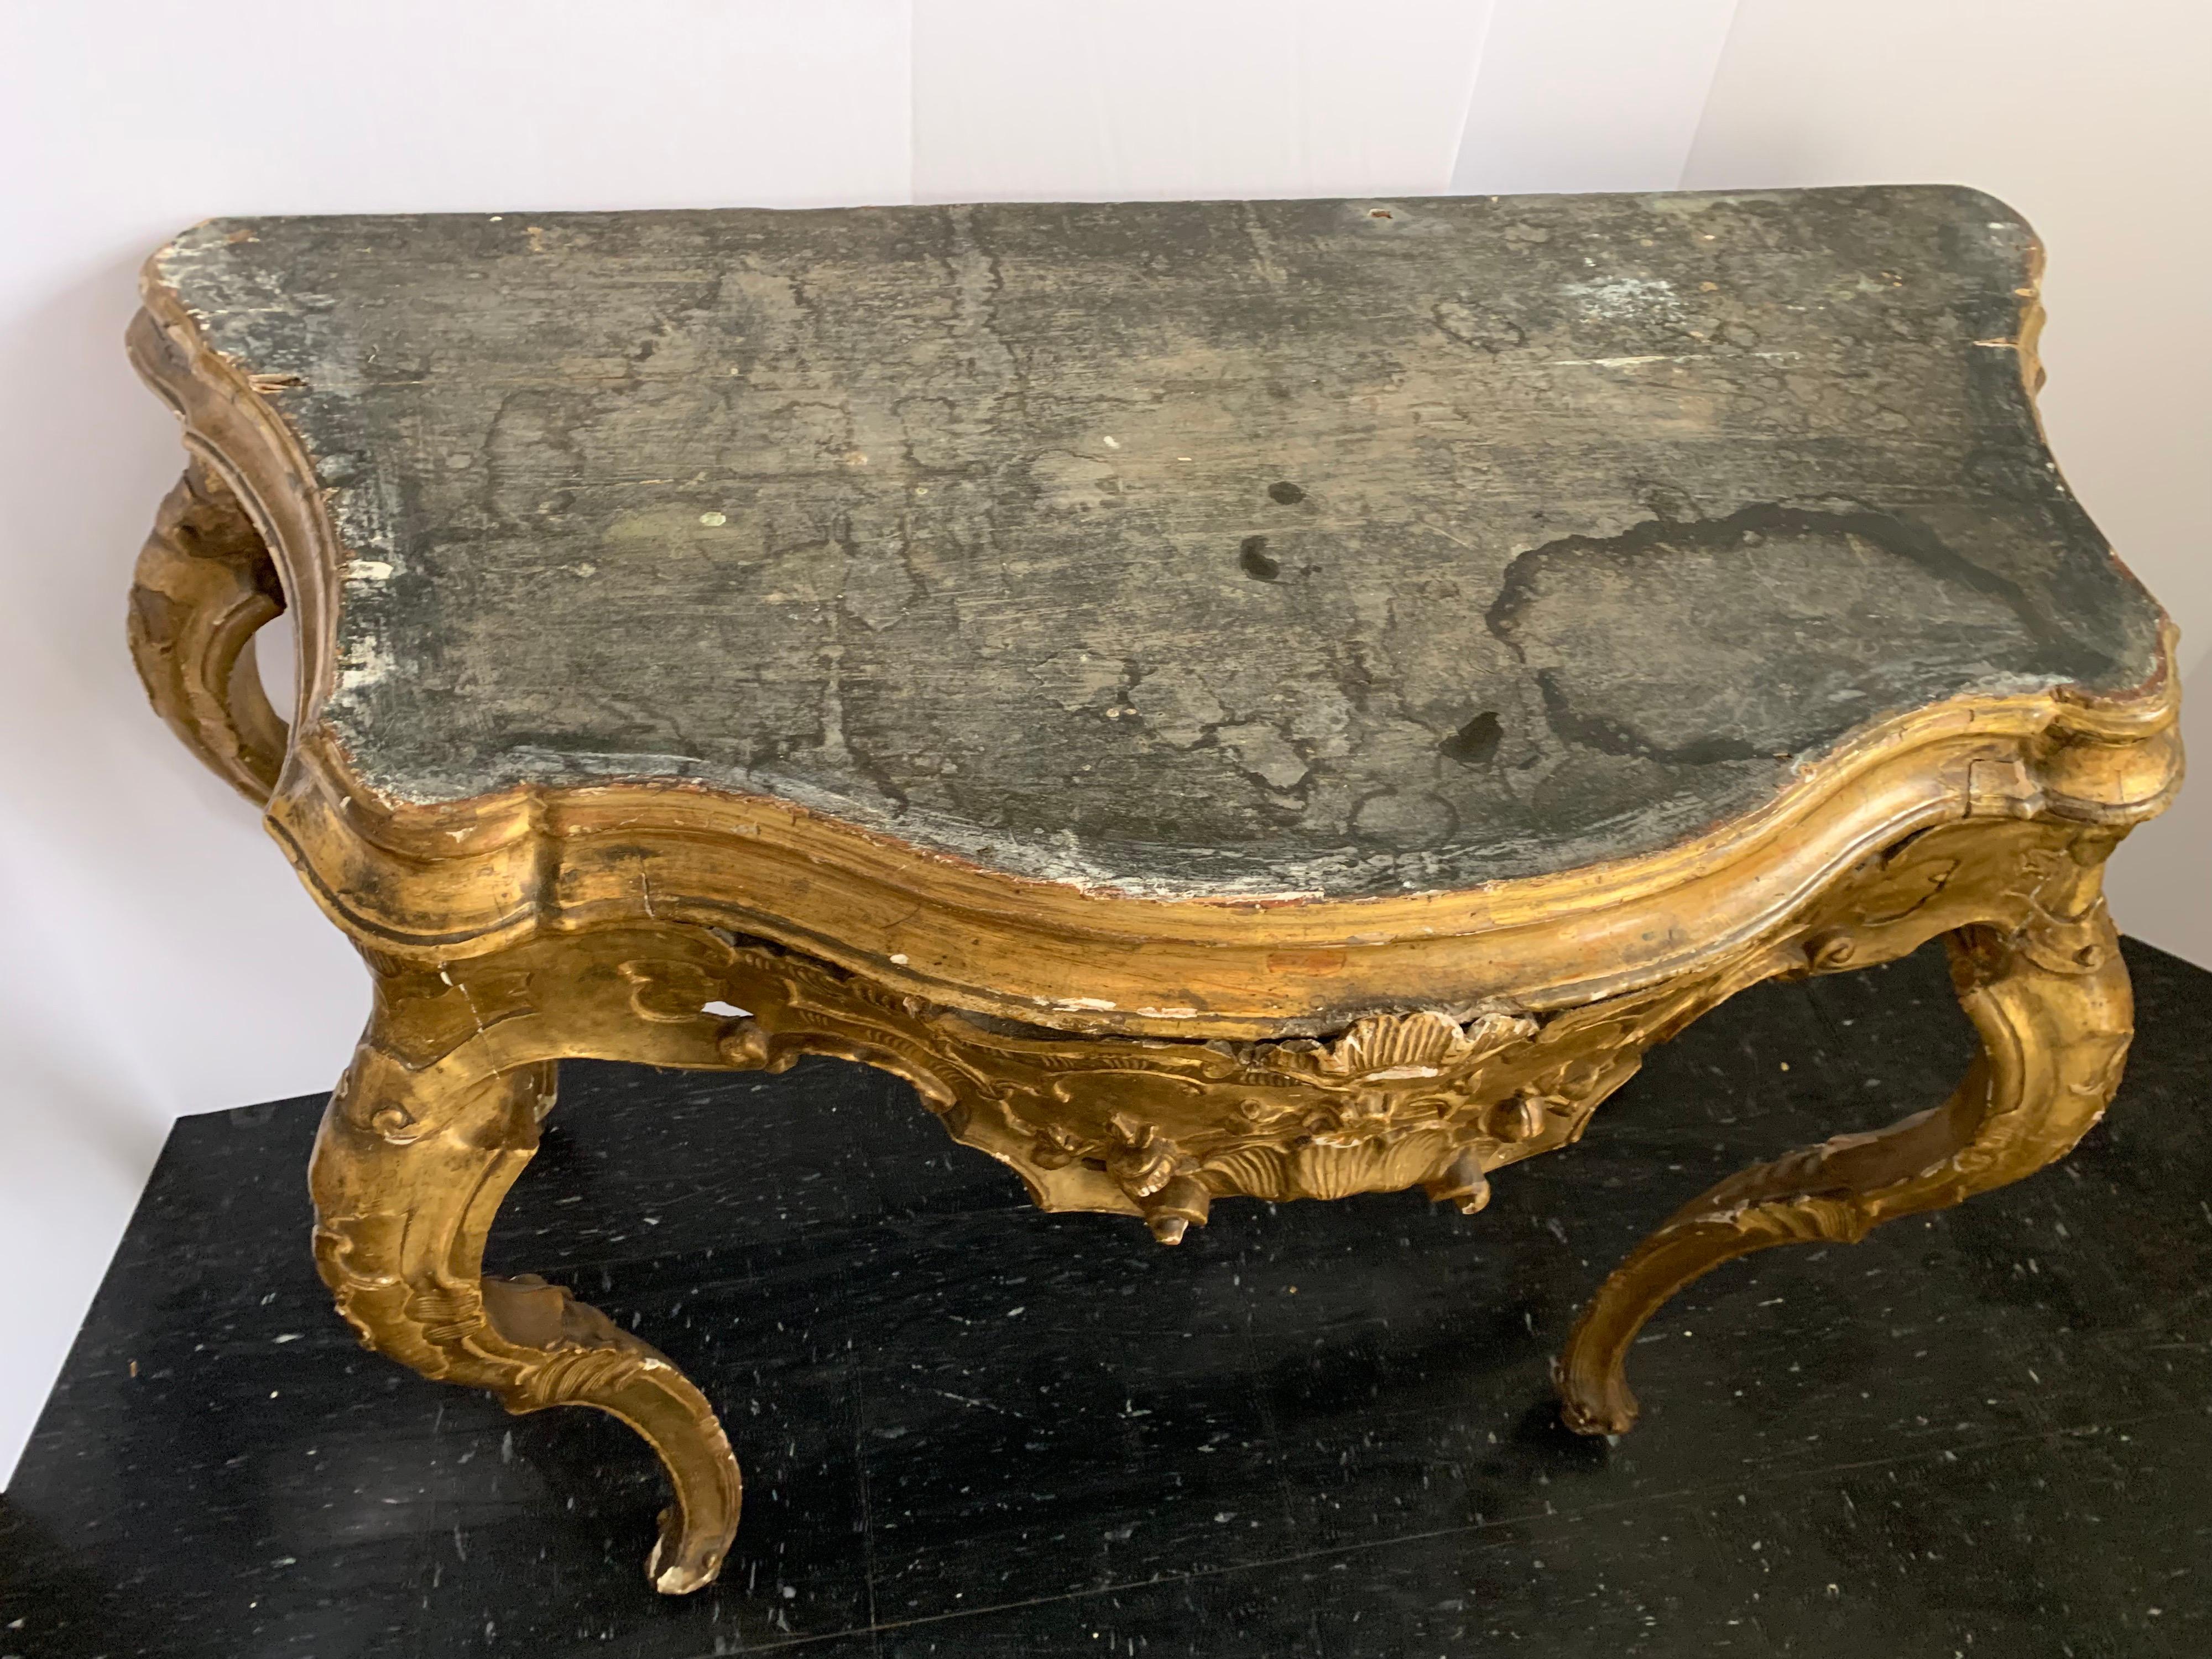 Fein geschnitzte venezianische Konsole mit prächtiger Vergoldung. Ein schickes Stück für jeden Bereich Ihres Hauses. Es ist auch für sein Alter in sehr gutem Zustand.